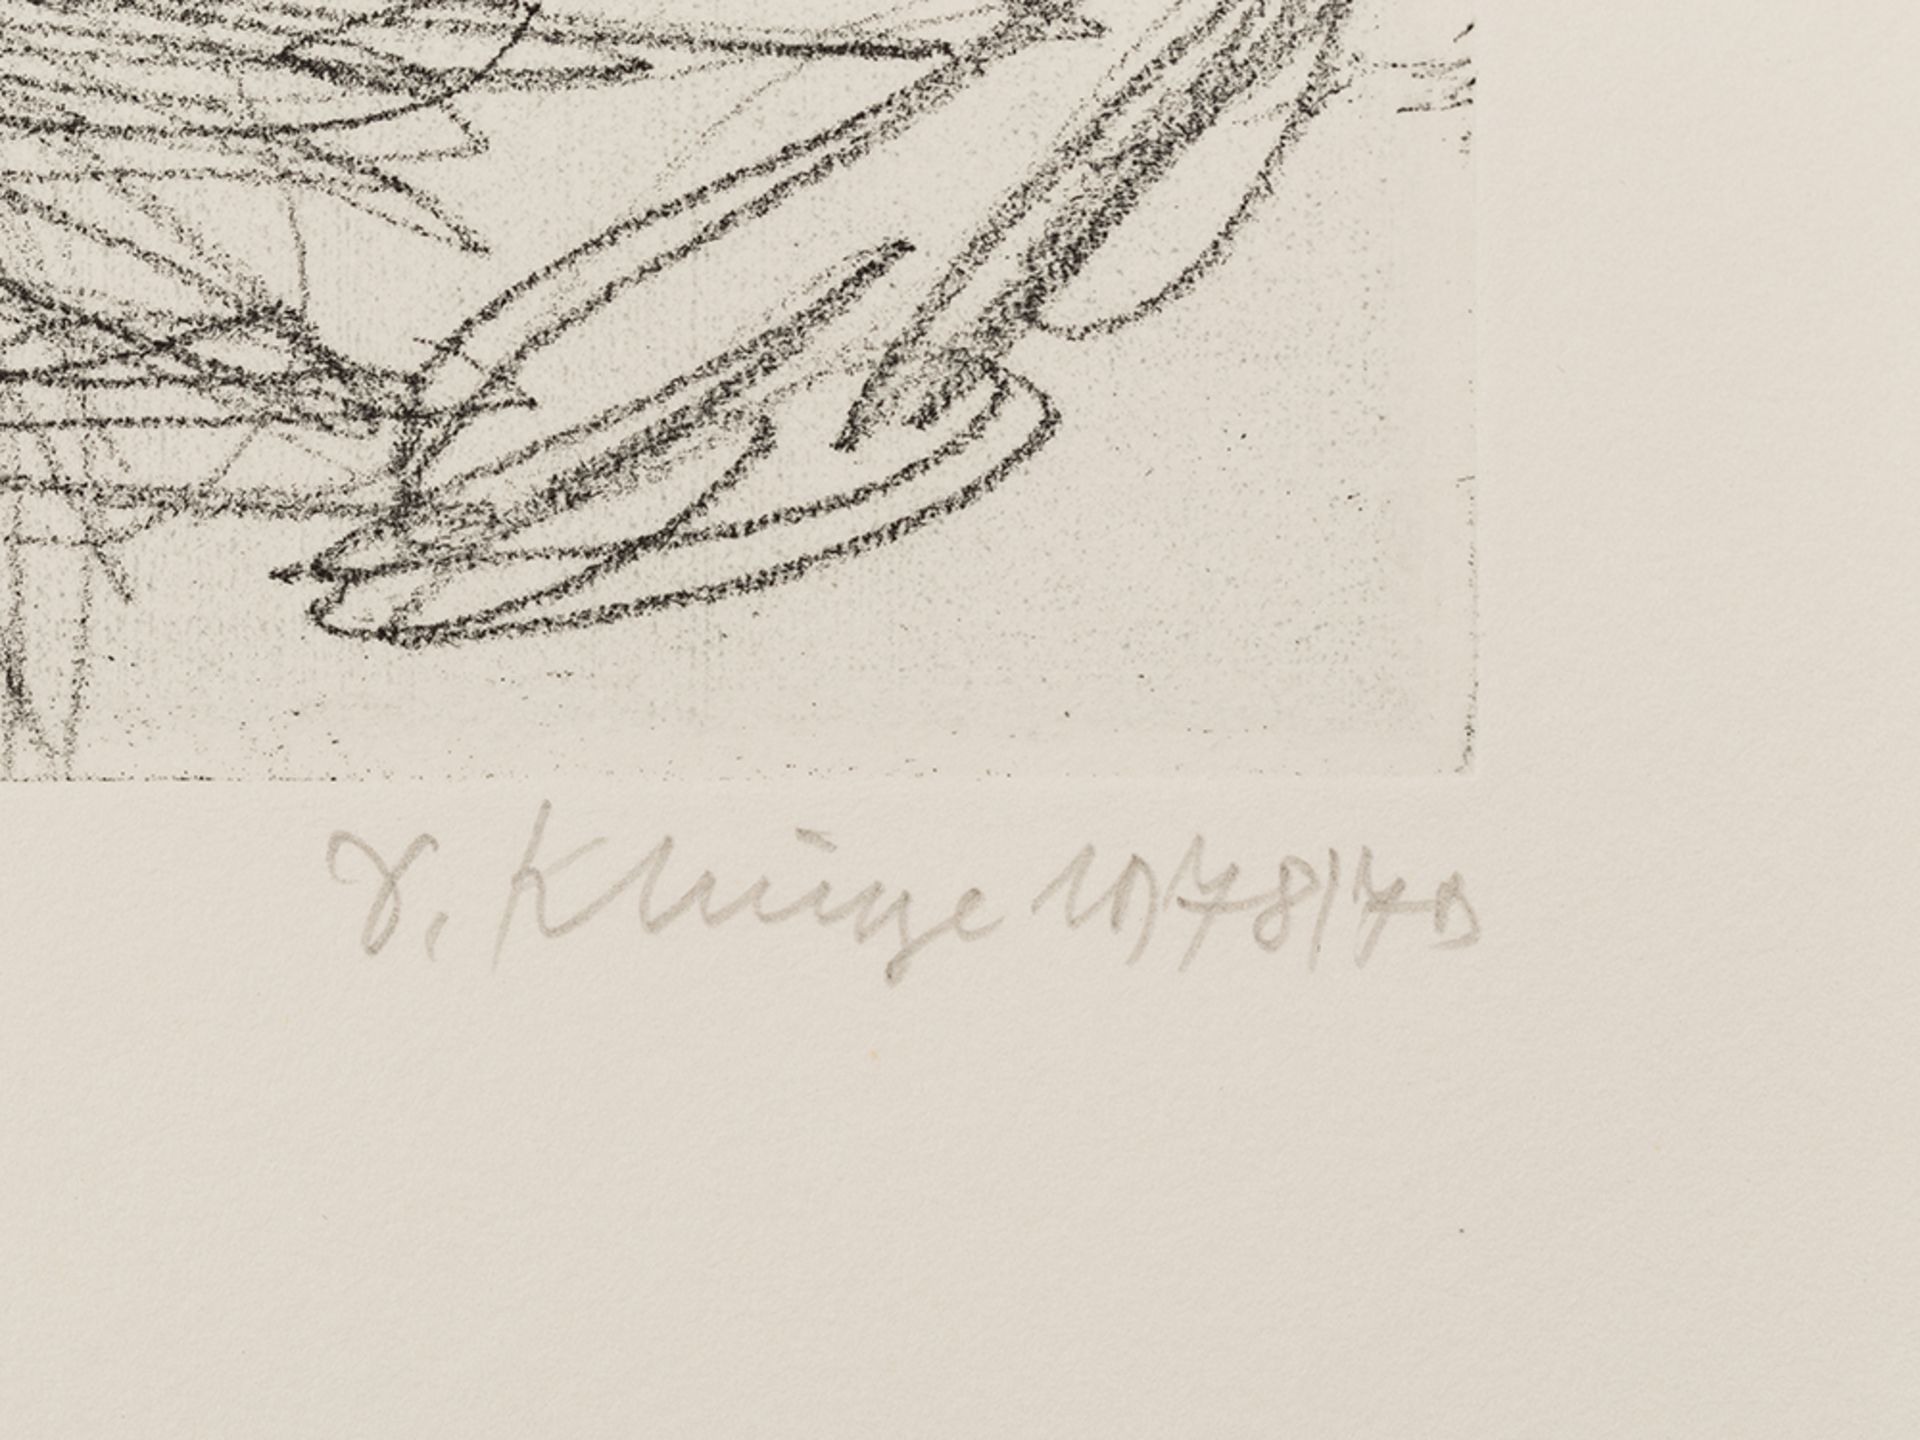 Dietrich Klinge, Kreuzigung, Cycle of 19 Etchings, 1978/79 - Image 5 of 30